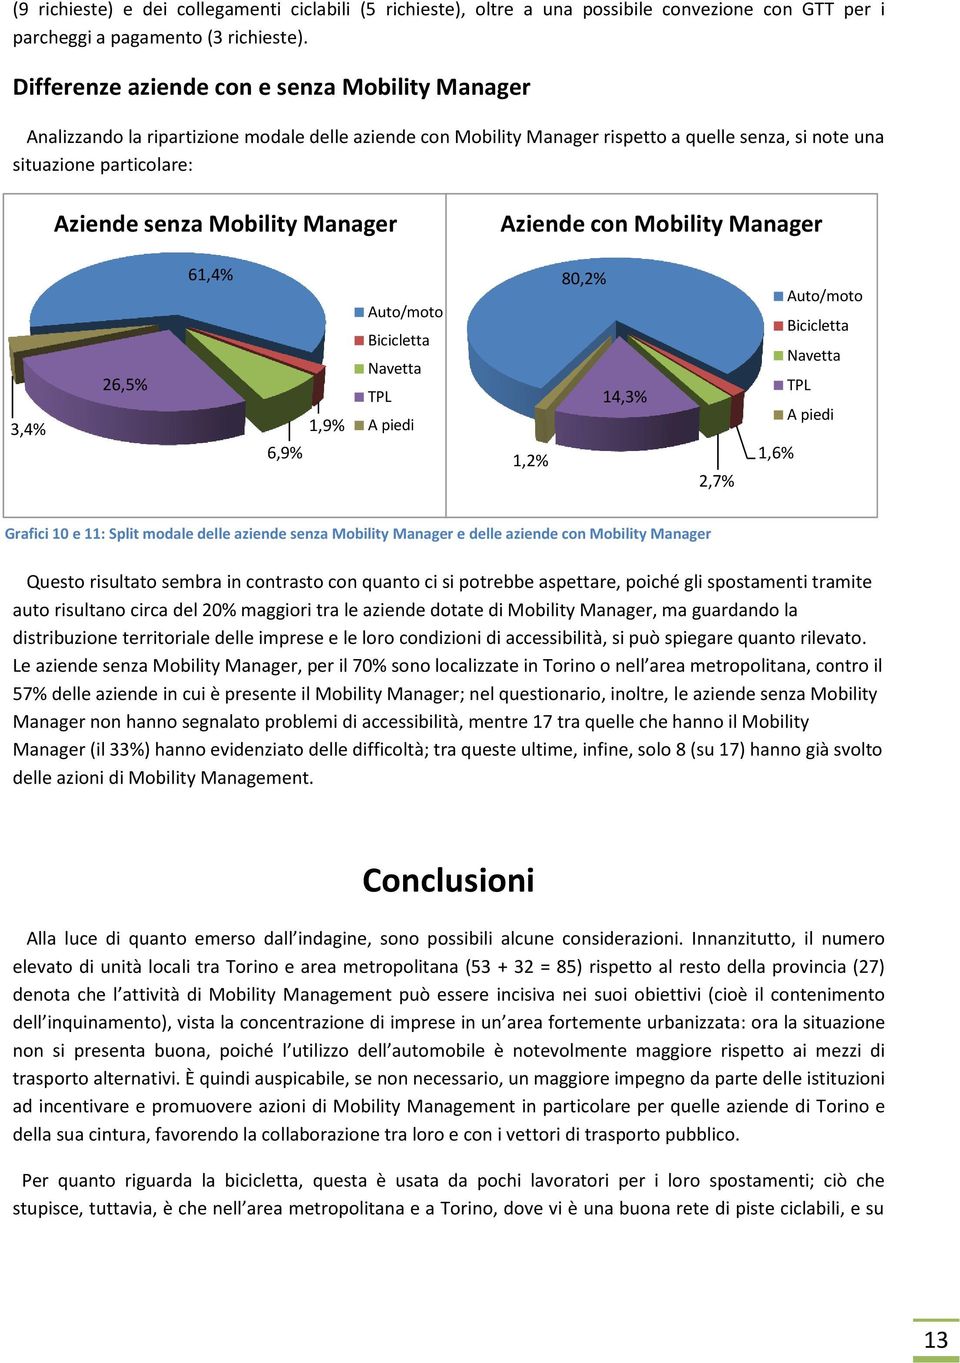 Mobility Manager Aziende con Mobility Manager 3,4% 26,5% 61,4% 6,9% 1,9% 1,2% 80,2% 14,3% 2,7% 1,6% Grafici 10 e 11: Split modale delle aziende senza Mobility Manager e delle aziende con Mobility